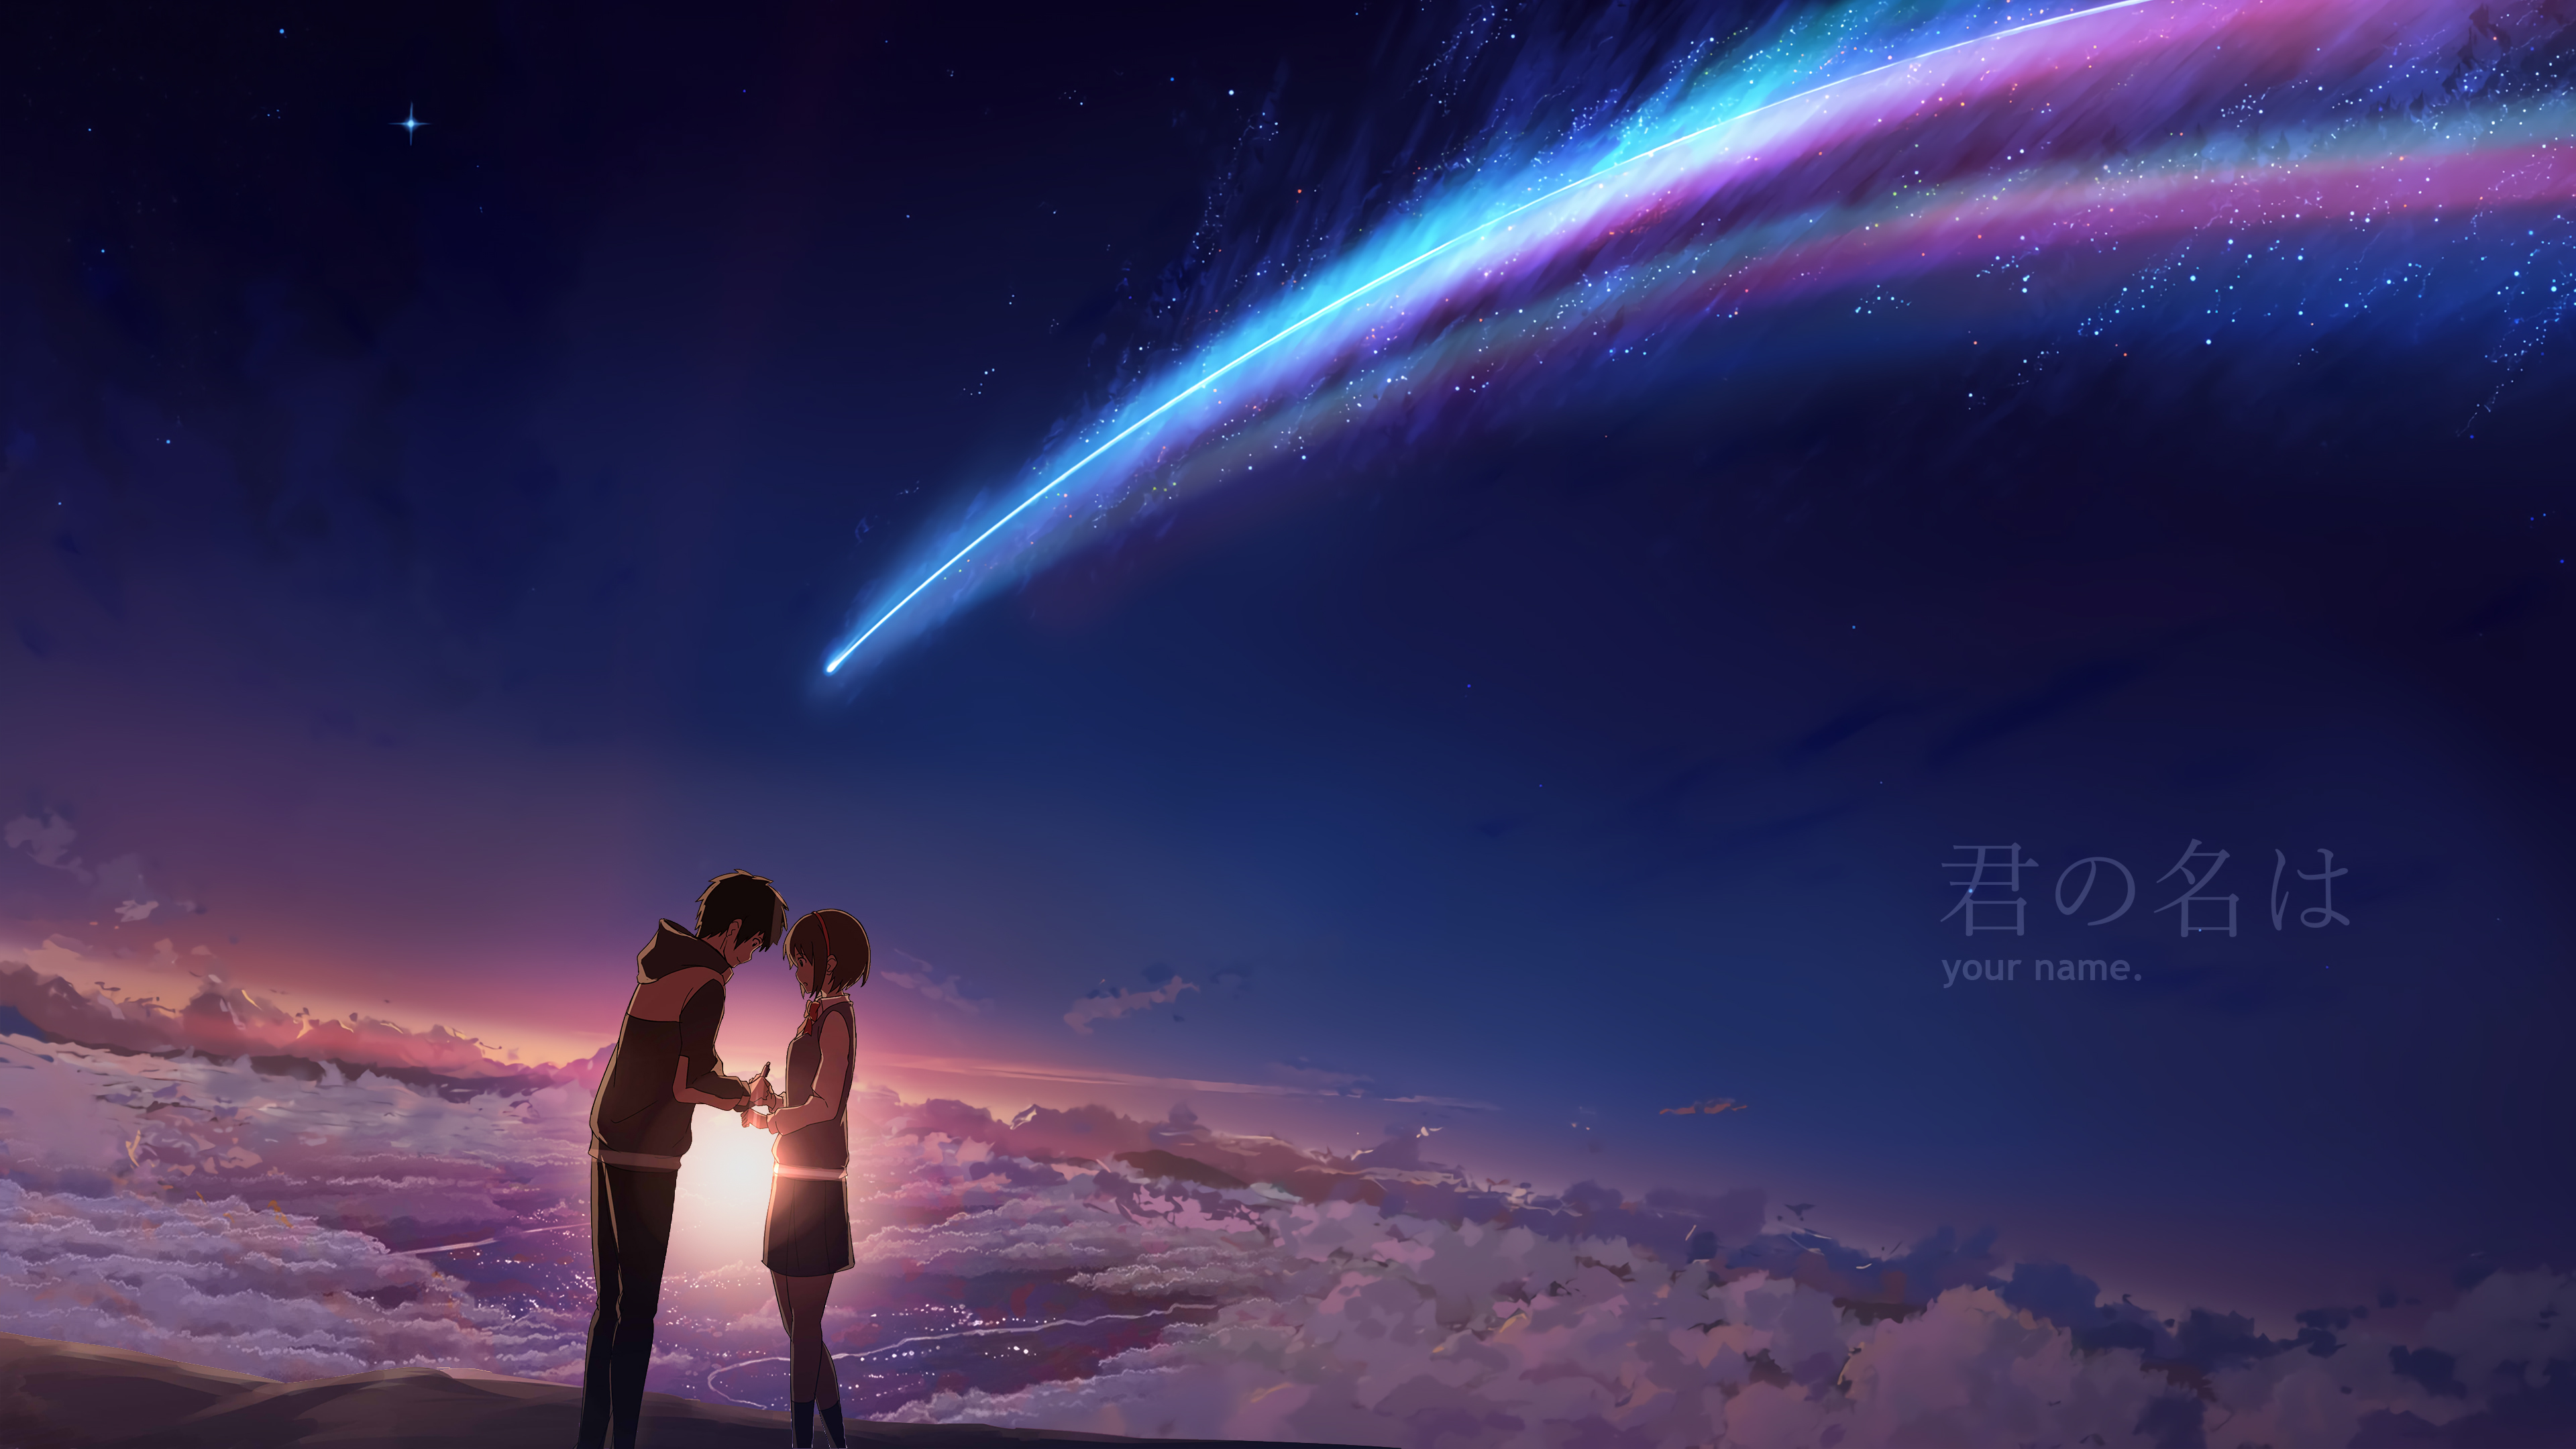 wallpapers anime, sky, your name, comet, cloud, kimi no na wa, mitsuha miyamizu, scenic, taki tachibana